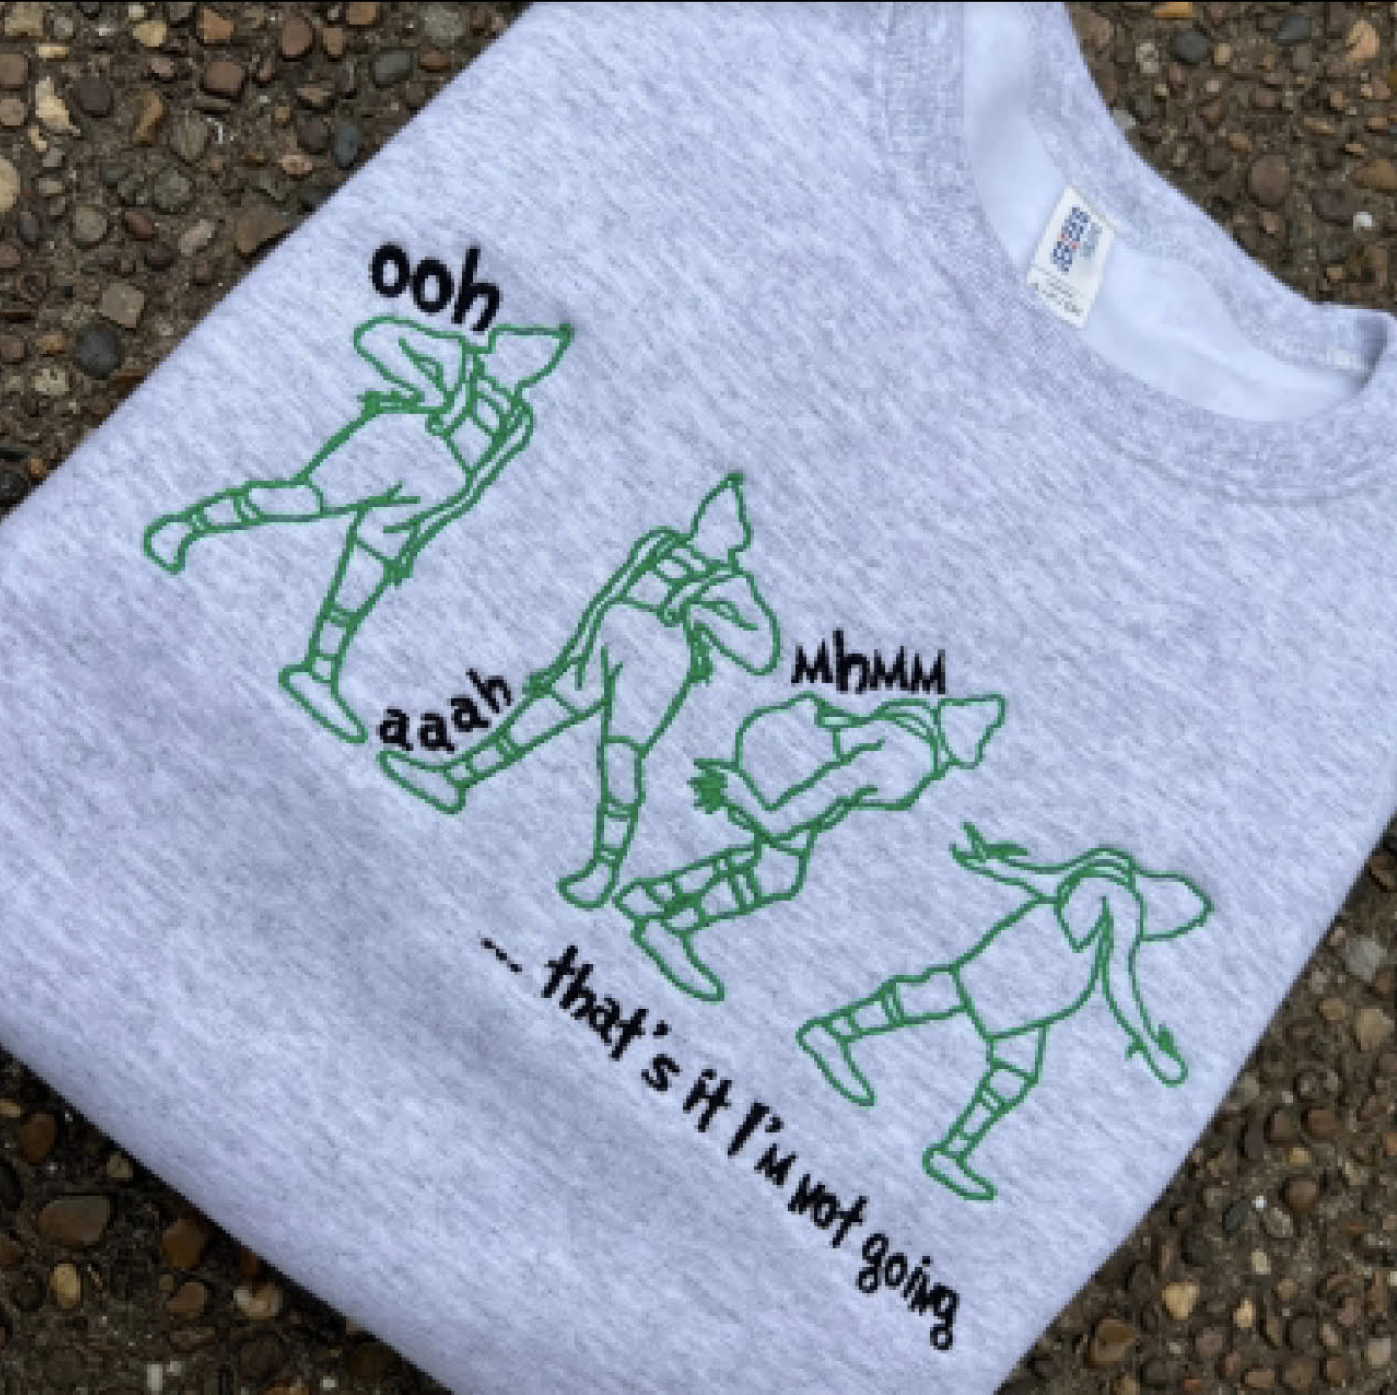 Evolving Monogram T-Shirt